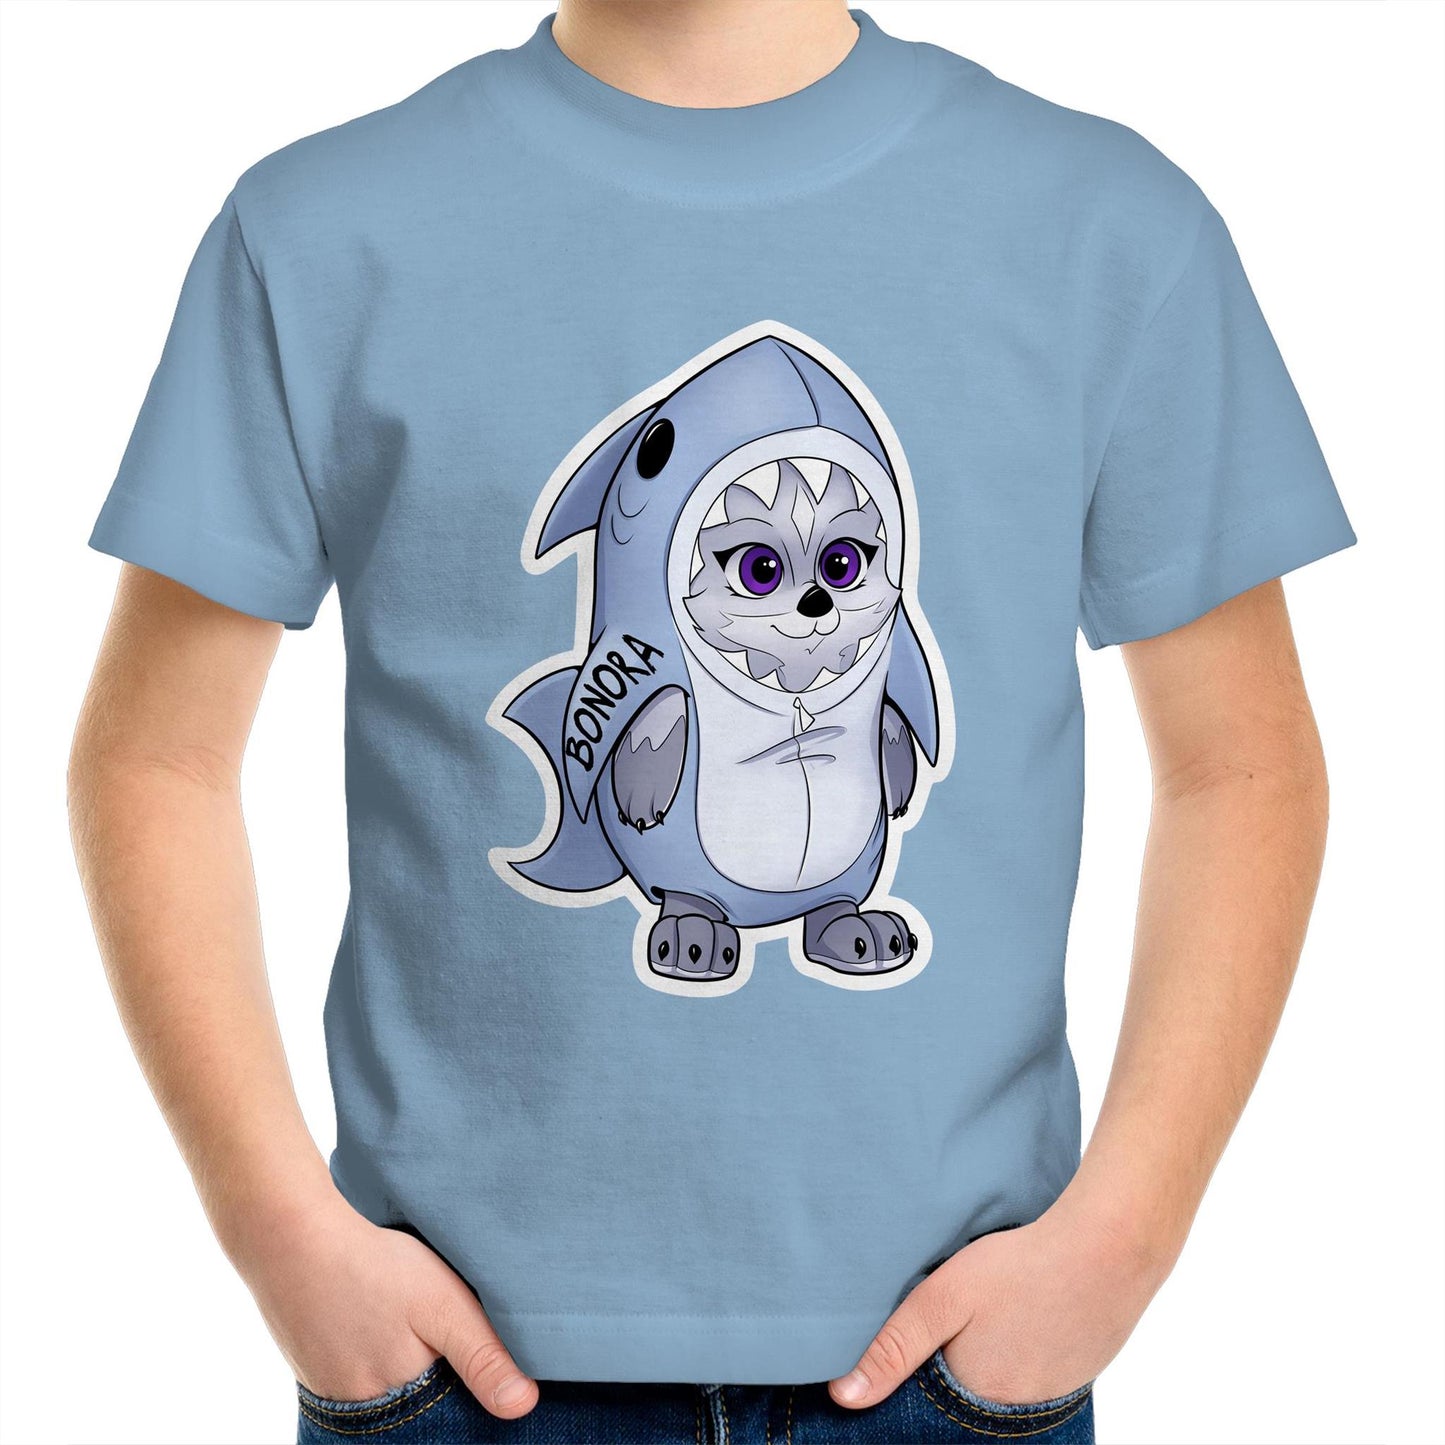 Charlie-Shark Kids T-shirt